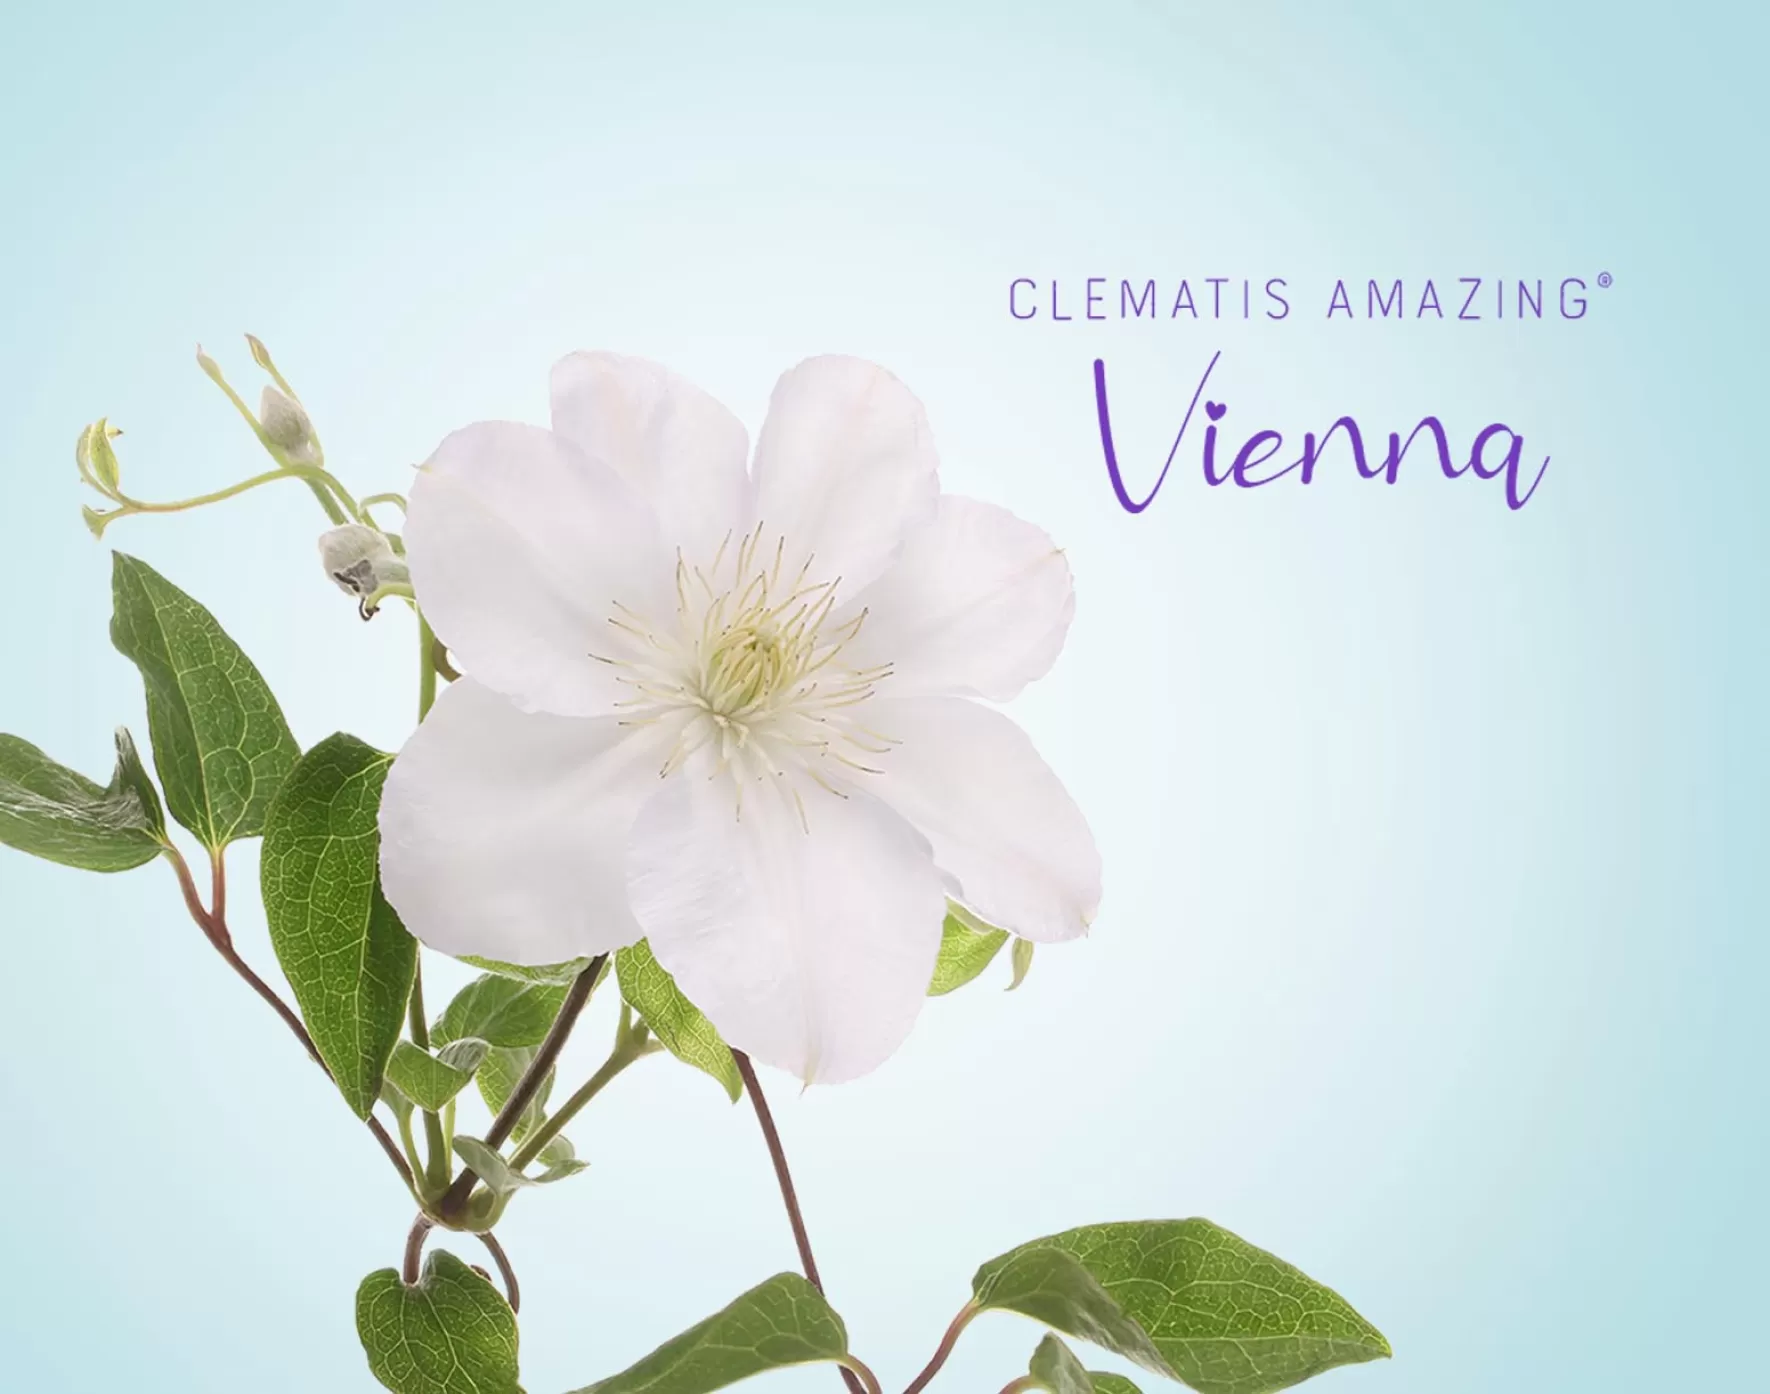 Clematis Amazing® Vienna